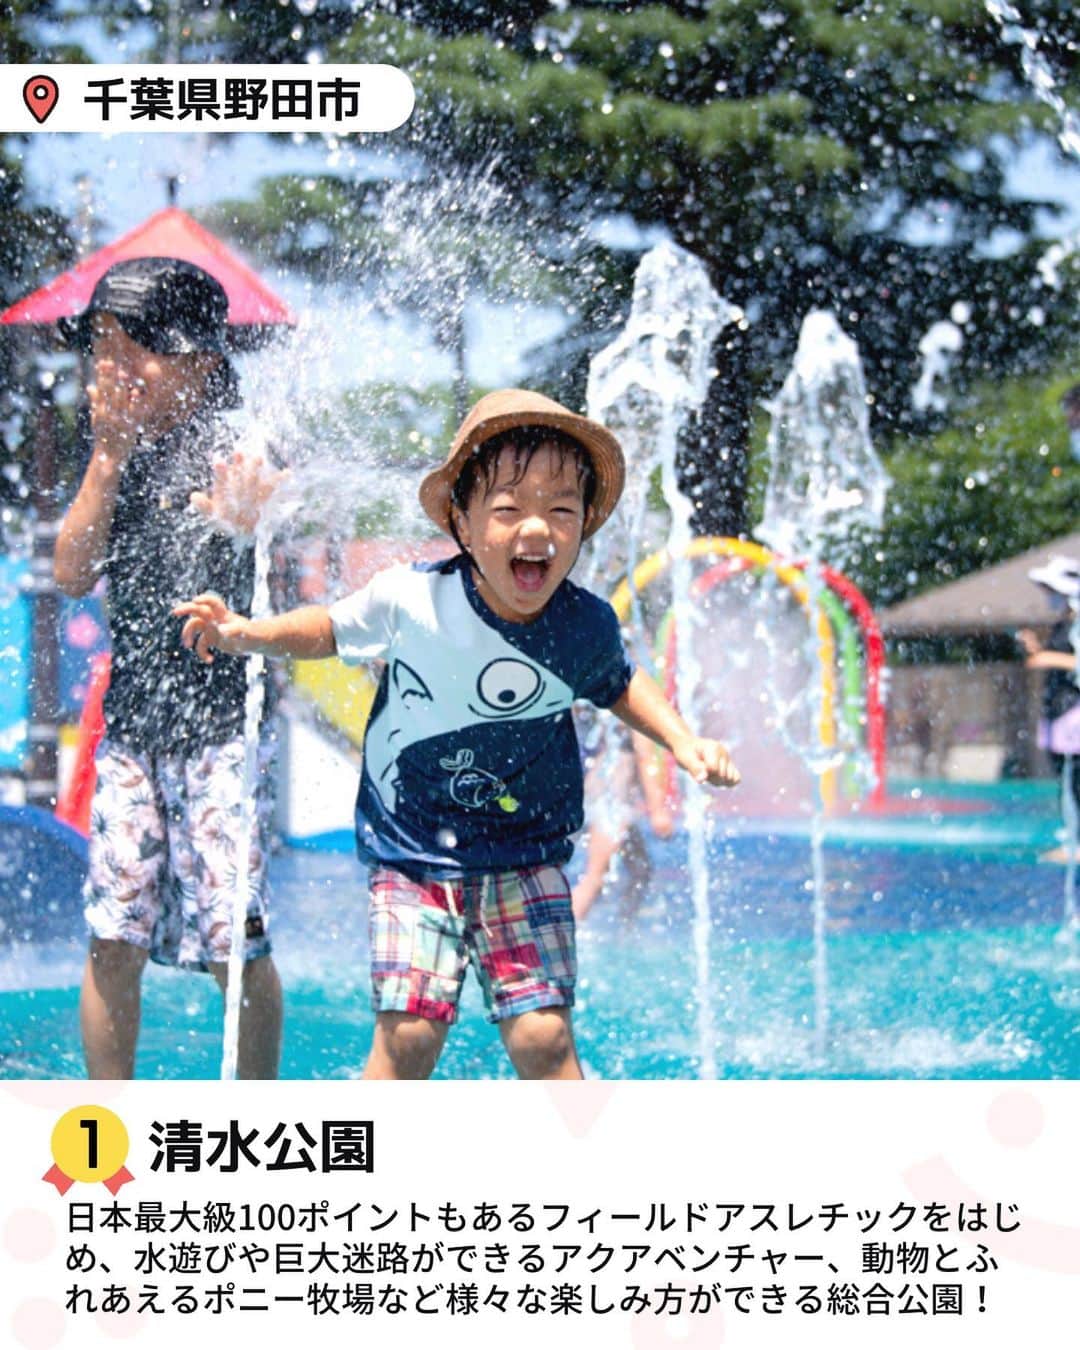 iko-yo（いこーよオフィシャル）さんのインスタグラム写真 - (iko-yo（いこーよオフィシャル）Instagram)「今回ピックアップしたのは「関東おでかけ月間人気ランキング」 ※2023年7月1日〜7月31日いこーよ集計 @ikoyo_odekakeに他の投稿も！ ーーーーーーーーーーーーーーーーーー 📍神奈川県横須賀市 8位【namcoトンデミ横須賀　コースカベイサイドストアーズ店】 @tondemiyokosuka  #トンデミ横須賀 テレビやYouTubeで話題！世界中から集めたたくさんのアスレチックやスポーツゲームが楽しめる都市型屋内アスレチック施設！国内初導入のアクティビティも！  📍埼玉県川口市 7位【ASOBooN】 @asobono_official  #asoboon  高速道路に直結！知育玩具で有名なボーネルンドプロデュースの関東最大級の屋内外の全天候型あそび場。場内には、大型遊具やボールプールをはじめ、ここにしかないジオラマや乗物コーナー、川口市の地場産業の鋳物で作ったオリジナル遊具で遊ぶことができます♪  📍埼玉県深谷市 6位【深谷グリーンパーク アクアパラダイス・パティオ】 #深谷グリーンパークアクアパラダイスパティオ  全天候型アミューズメントプールは、一年中いつでもプールが楽しめます！日焼けを気にせず思いっきり楽しめ、BBQやキャンプも楽しめるので泊りで楽しもう♪  📍神奈川県相模原市 5位【さがみ湖リゾート プレジャーフォレスト】 @sagamiko_resort  #さがみ湖リゾートプレジャーフォレスト  遊園地、温泉、BBQ施設、キャンプフィールドが揃うリゾート施設！ 緑豊かな遊園地エリアには、アスレチックや迷路、乗り物アトラクション、夏は水遊び広場など、ベビーから大人まで楽しめる遊びが勢ぞろい♪  📍千葉県山武市 4位【蓮沼ウォーターガーデン】 @hasunumakaihink  #蓮沼ウォーターガーデン  お子様を対象とした「トドラーキッズスペース」や巨大なバケツから勢いよく頭上に水が降り注ぐ「スーパースプラッシュ」、大人に手を引かれて滑るドキドキの山下りを体験できる「マウンテンストリーム」など様々なアトラクションプールが充実！全長182メートルの巨大ウォータースライダー「スプラッシュシェイカー」の大迫力満点で楽しい要素が盛りだくさん！  📍東京都江東区 3位【チームラボプラネッツ TOKYO DMM】 @teamlab.planets  #チームラボプラネッツ  水、花、光、宇宙空間への圧倒的な没入体験！ 親子で楽しめる超巨大なミュージアム。 ミュージアムは、総敷地面積10,000平米（テニスコート約38面分）の空間内に、超巨大な作品群で構成されています。  📍栃木県芳賀郡茂木町 2位【モビリティリゾートもてぎ】 @motegi_official  #もてぎ  森遊びやブランコを楽しみながら自然の中を散策できる「森のファミリーウォークTEKUTEKU」、親子で39箇所の木登り型アスレチックに挑戦できる「森感覚アスレチックDOKIDOKI」など家族で思いっきり体を動かして遊べるアクティビティがいっぱい！  📍千葉県野田市 1位【清水公園】 @shimizukouen  #清水公園  日本最大級100ポイントもある「フィールドアスレチック」をはじめ、キャンプ場やバーベキュー場、ポニー牧場などたくさんの楽しみ方ができる総合公園です。夏は巨大迷路もあり水遊びエリア「アクアベンチャー」が大人気！  ※2023年7月19日時点の情報です。 最新の情報は公式HPや「いこーよ」サイトでご確認ください。 ーーーーーーーーーーーーーーーーーーー おでかけ情報量は日本最大級！ 子どもとお出かけ情報サイト「いこーよ」 「親子でおでかけしたい場所」をご紹介させていただいています！ お子さんとのおでかけの思い出の写真を、このアカウントをフォローの上#いこーよ をつけてぜひ投稿してください。魅力的な写真は、いこーよ公式SNSで紹介させていただきます！ 募集中タグ#いこーよ　#いこーよおでかけ部 「子どもと行きたい！」と思ったら保存が便利！ プロフィールのURLから「いこーよ」のサイトに行くと、他の投稿やオトクな情報などが載っています♪ ☞ @ikoyo_odekake #いこーよ #お出かけ #おでかけ #お出かけスポット #子育て #こどものいる暮らし #子連れスポット #子連れおでかけ#いこーよお出かけ部 #関東おでかけ #水遊び #巨大迷路 #アスレチック #プール #屋内あそび場 #室内あそび場」8月24日 20時53分 - ikoyo_odekake